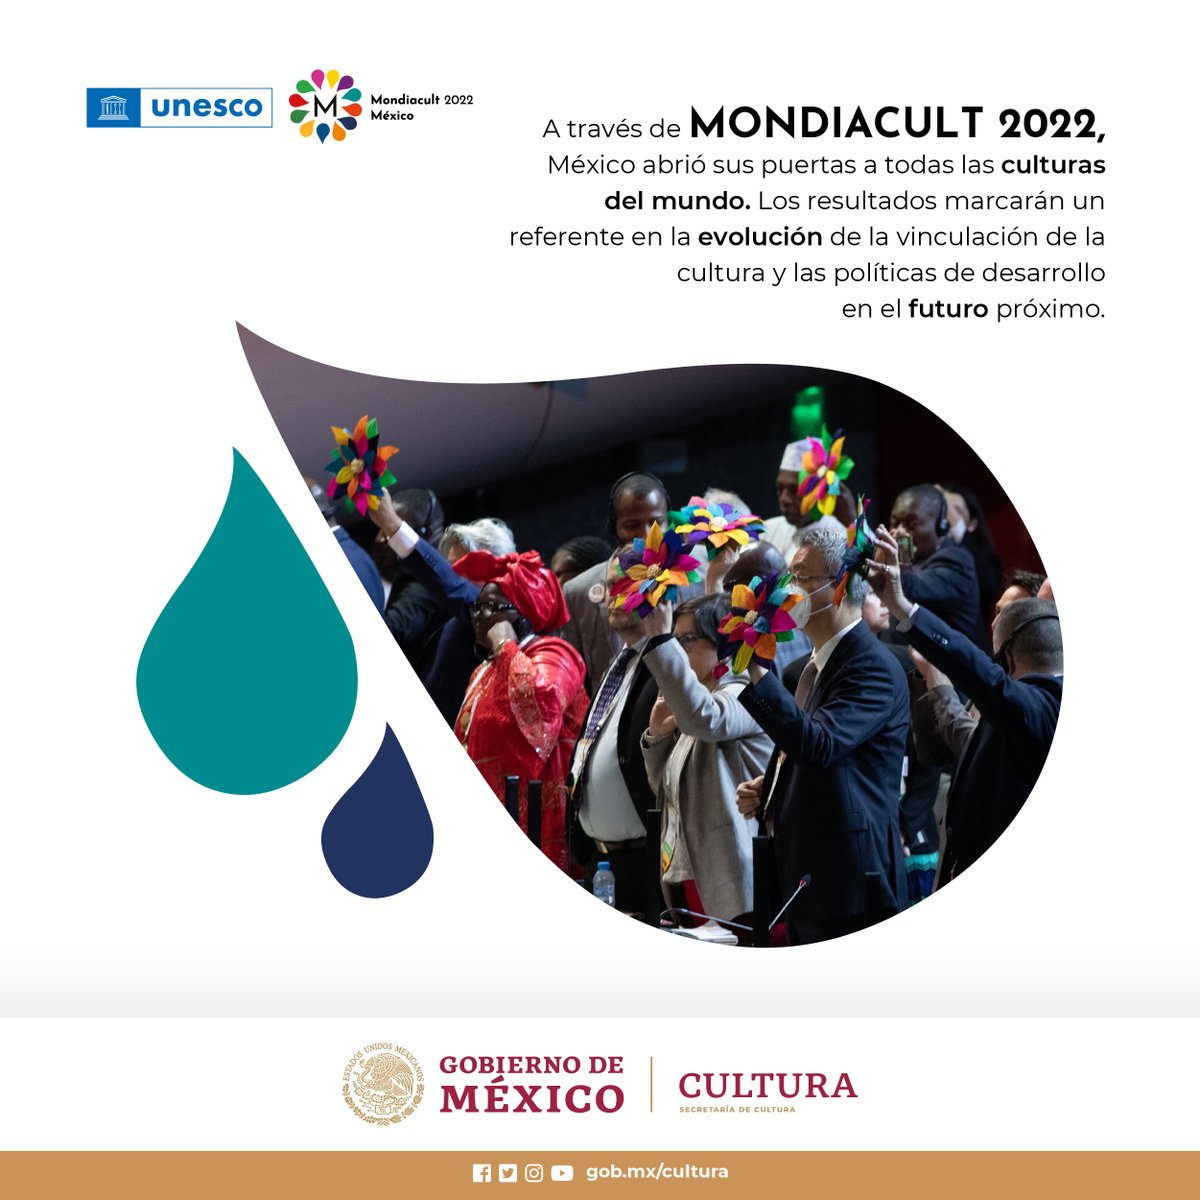 #MONDIACULT2022 constituye el primer encuentro cultural de alto nivel del siglo XXI, con México como sede.

@alefrausto